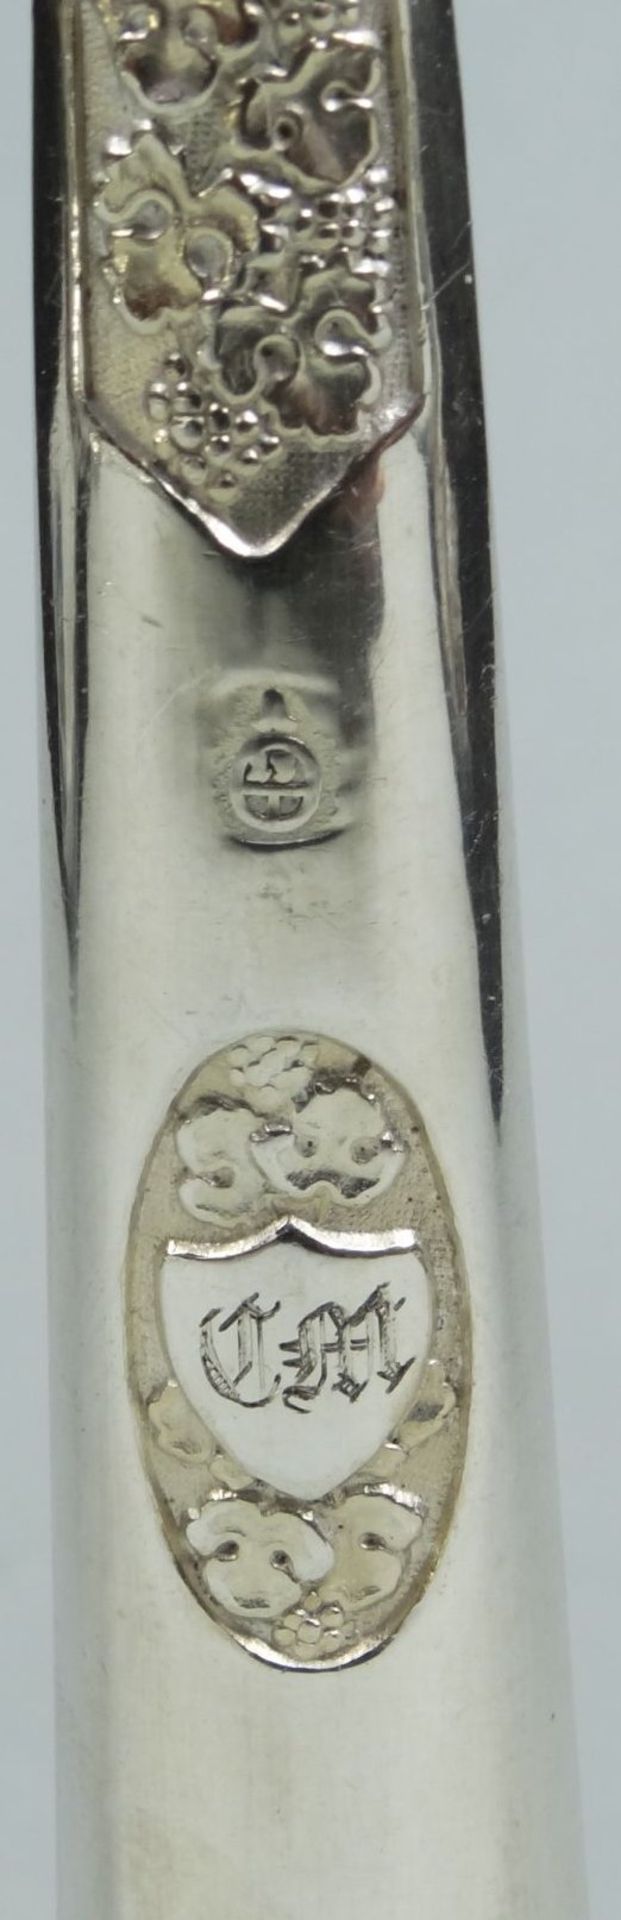 4-tg. Kinder (?) Besteck, in Pappschachtel, 13 lötiges Silber um 1840, Ziermonogramm, L- max. 19 cm, - Bild 5 aus 6